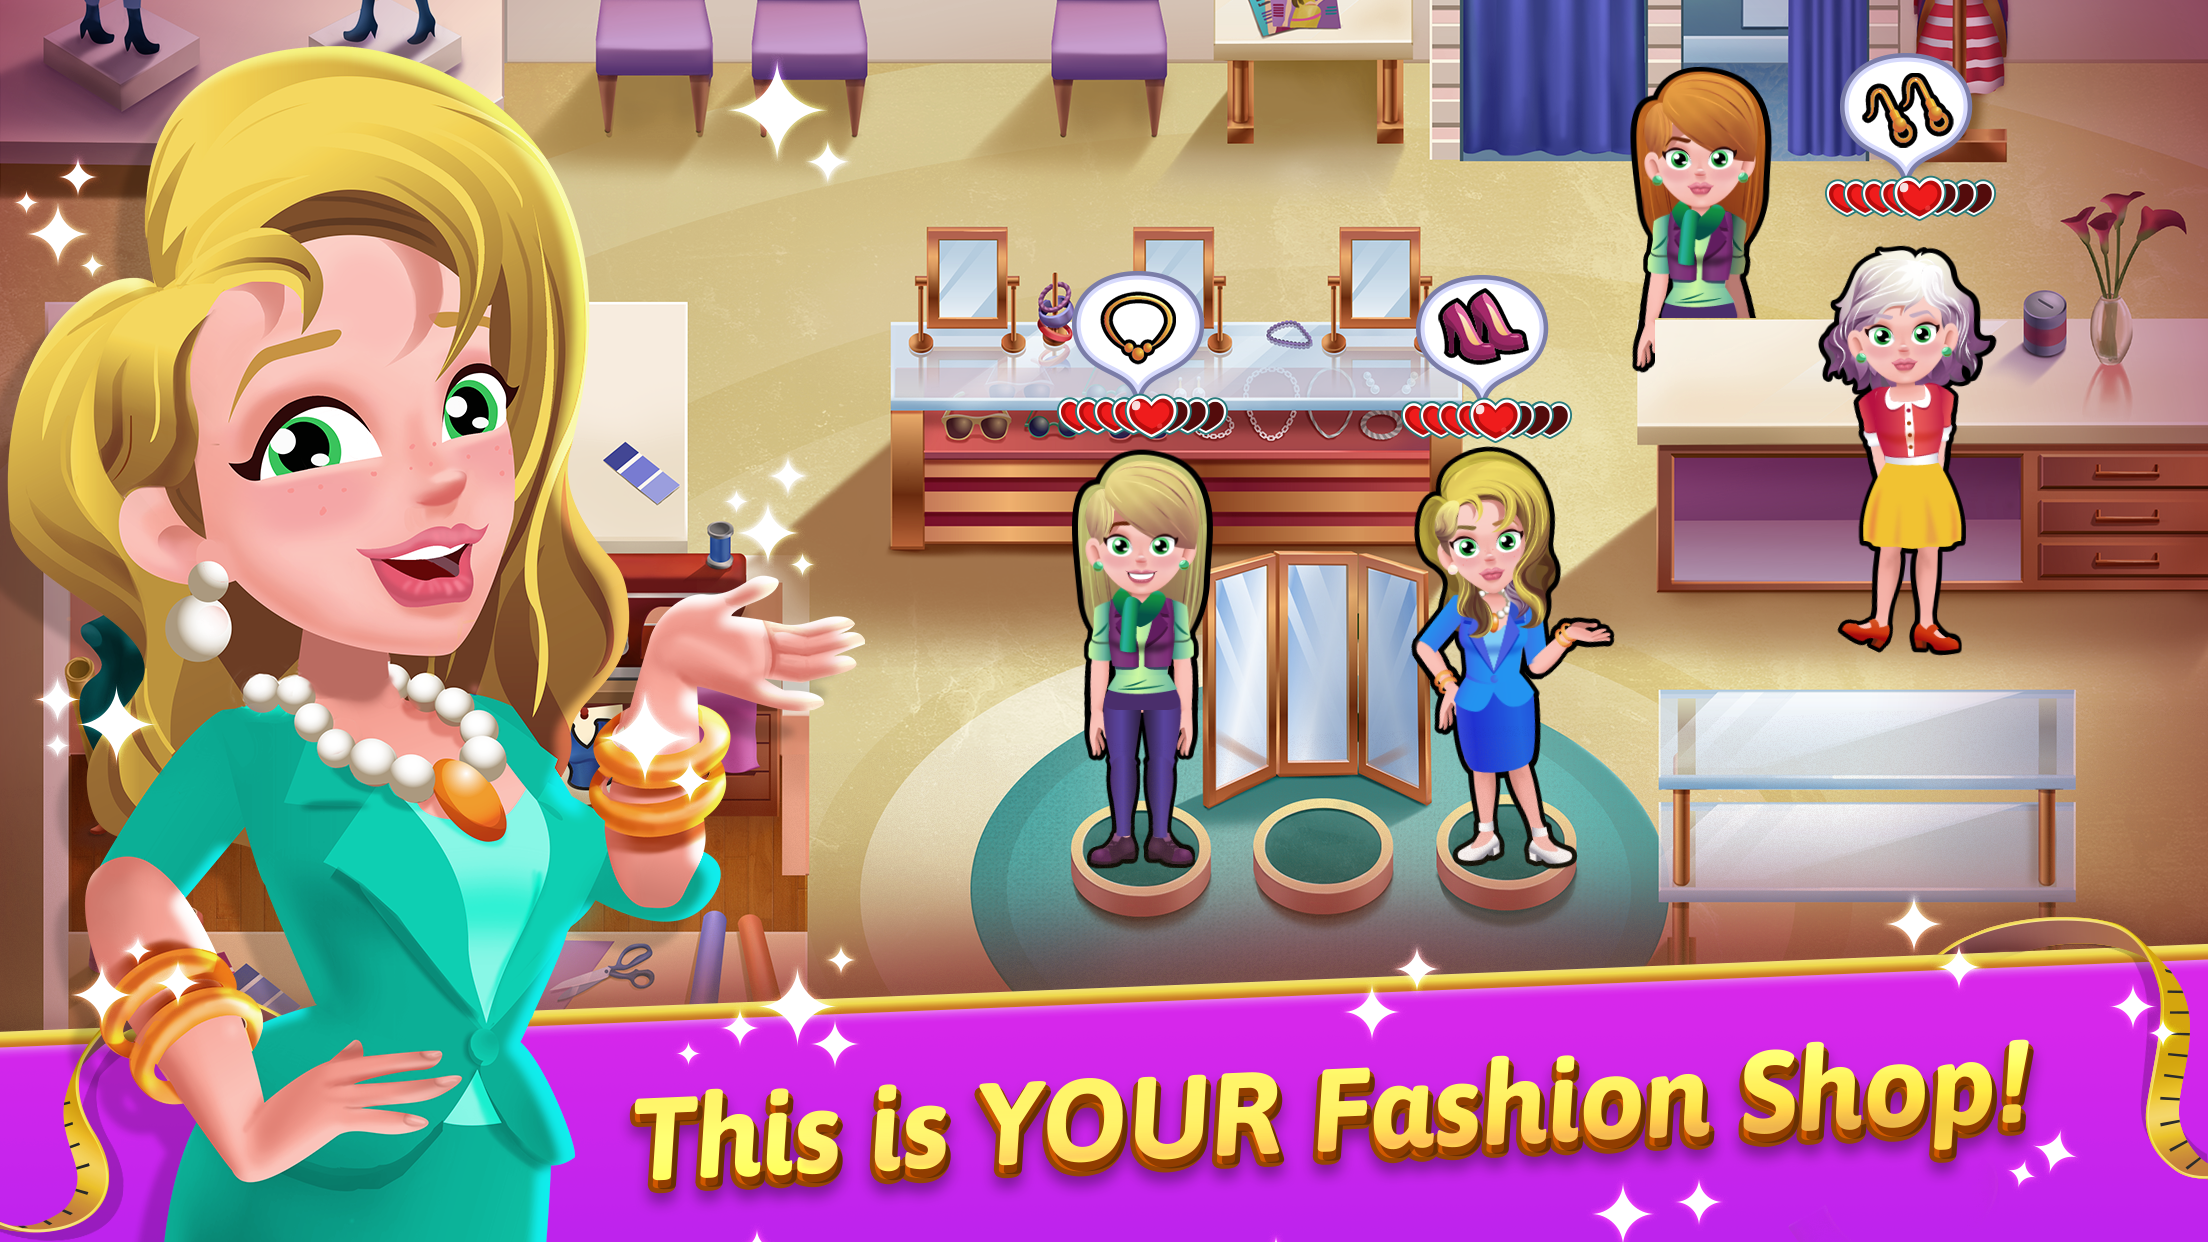 Screenshot 1 of Fashion Salon Dash: игра в магазин 1.0.6